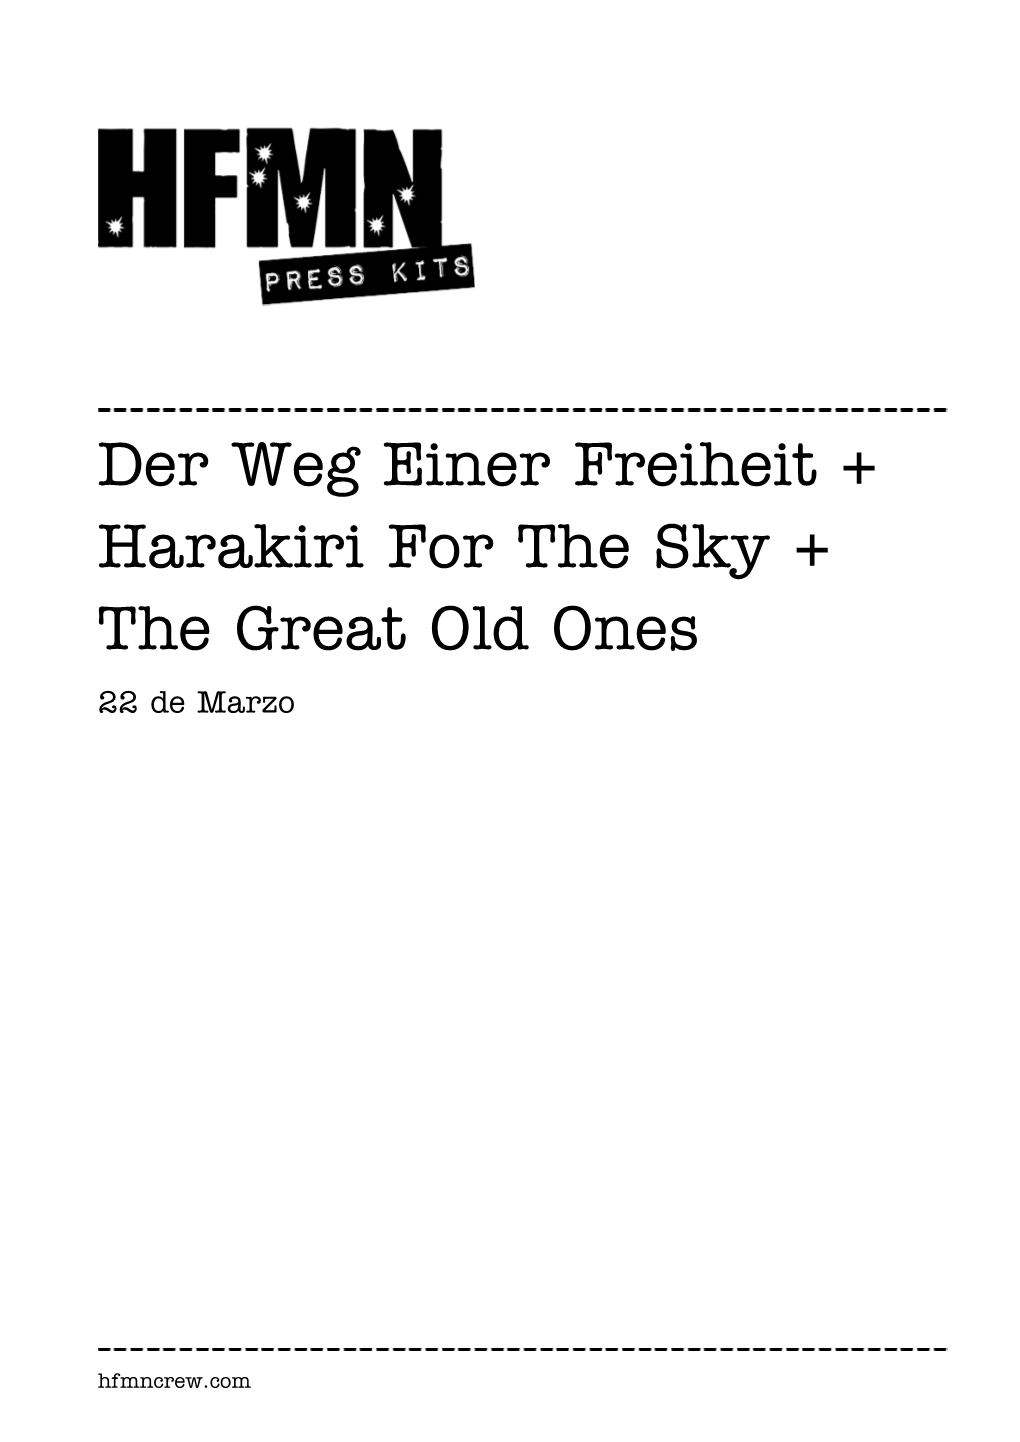 Der Weg Einer Freiheit + Harakiri for the Sky + the Great Old Ones 22 De Marzo